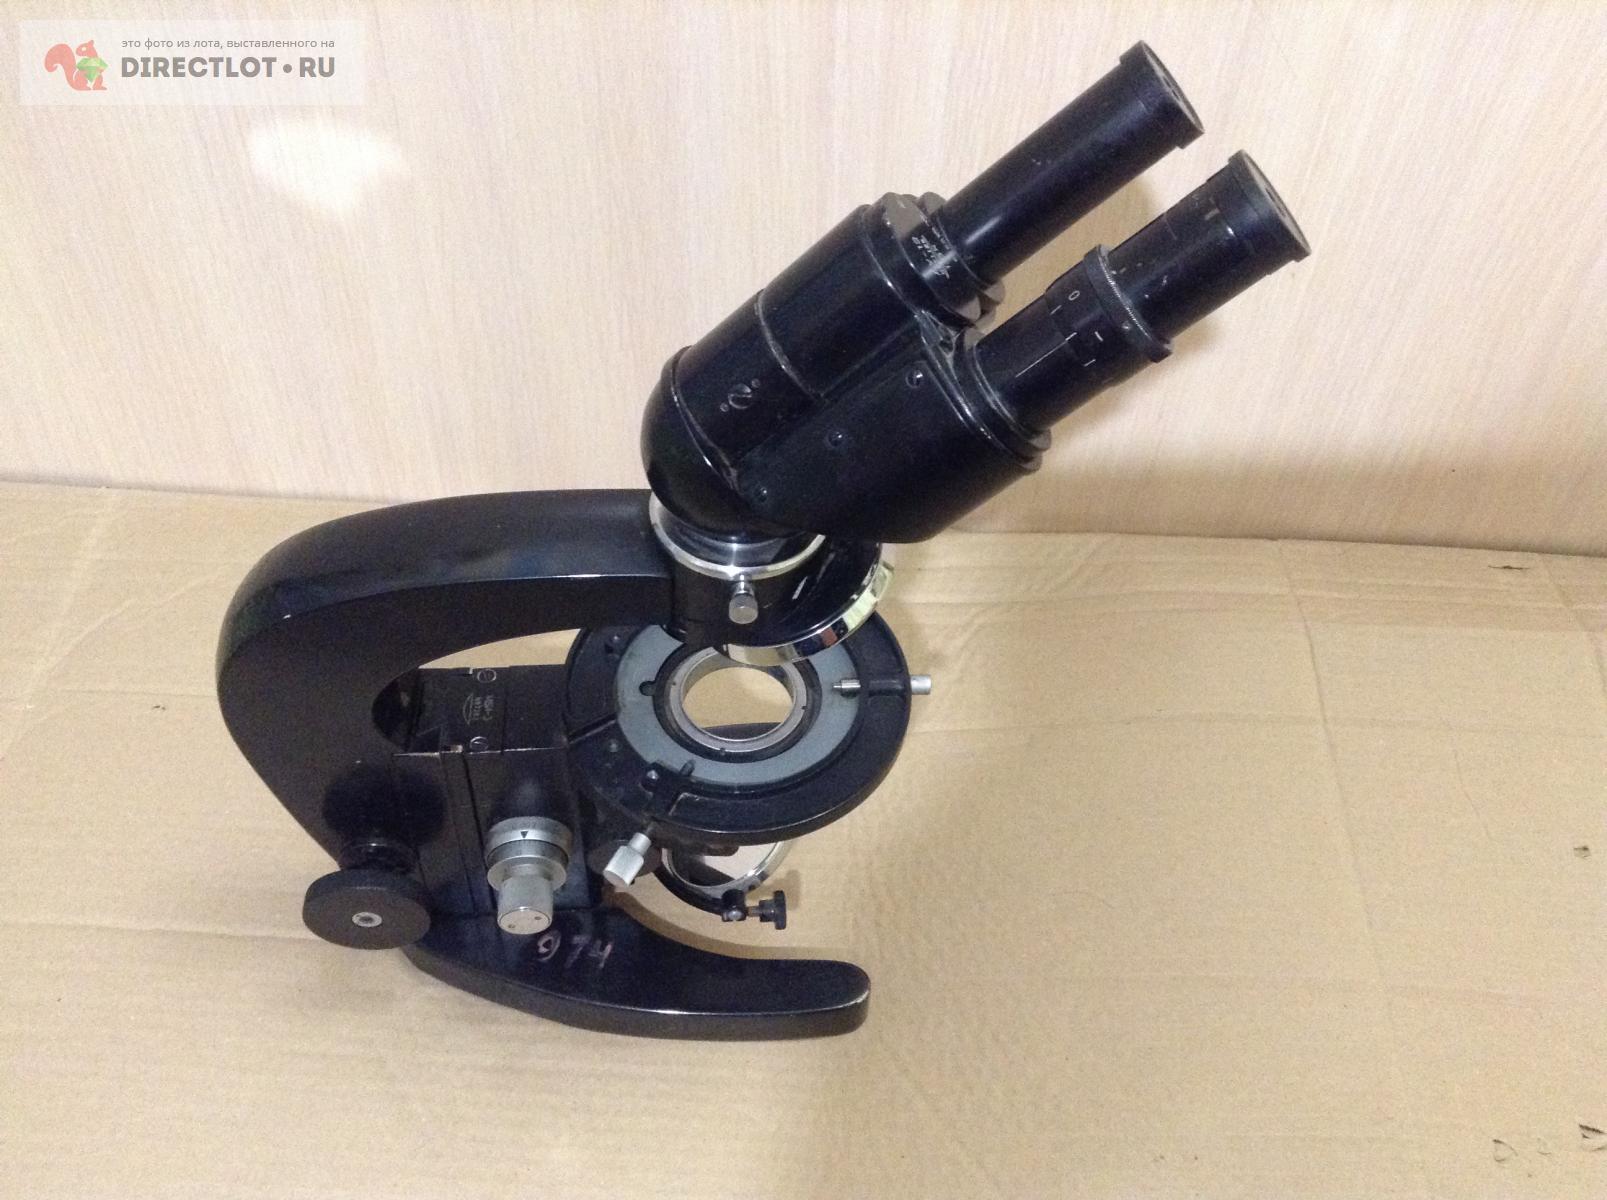 Микроскоп МБИ-3  в Саратове цена 4500 Р на DIRECTLOT.RU .